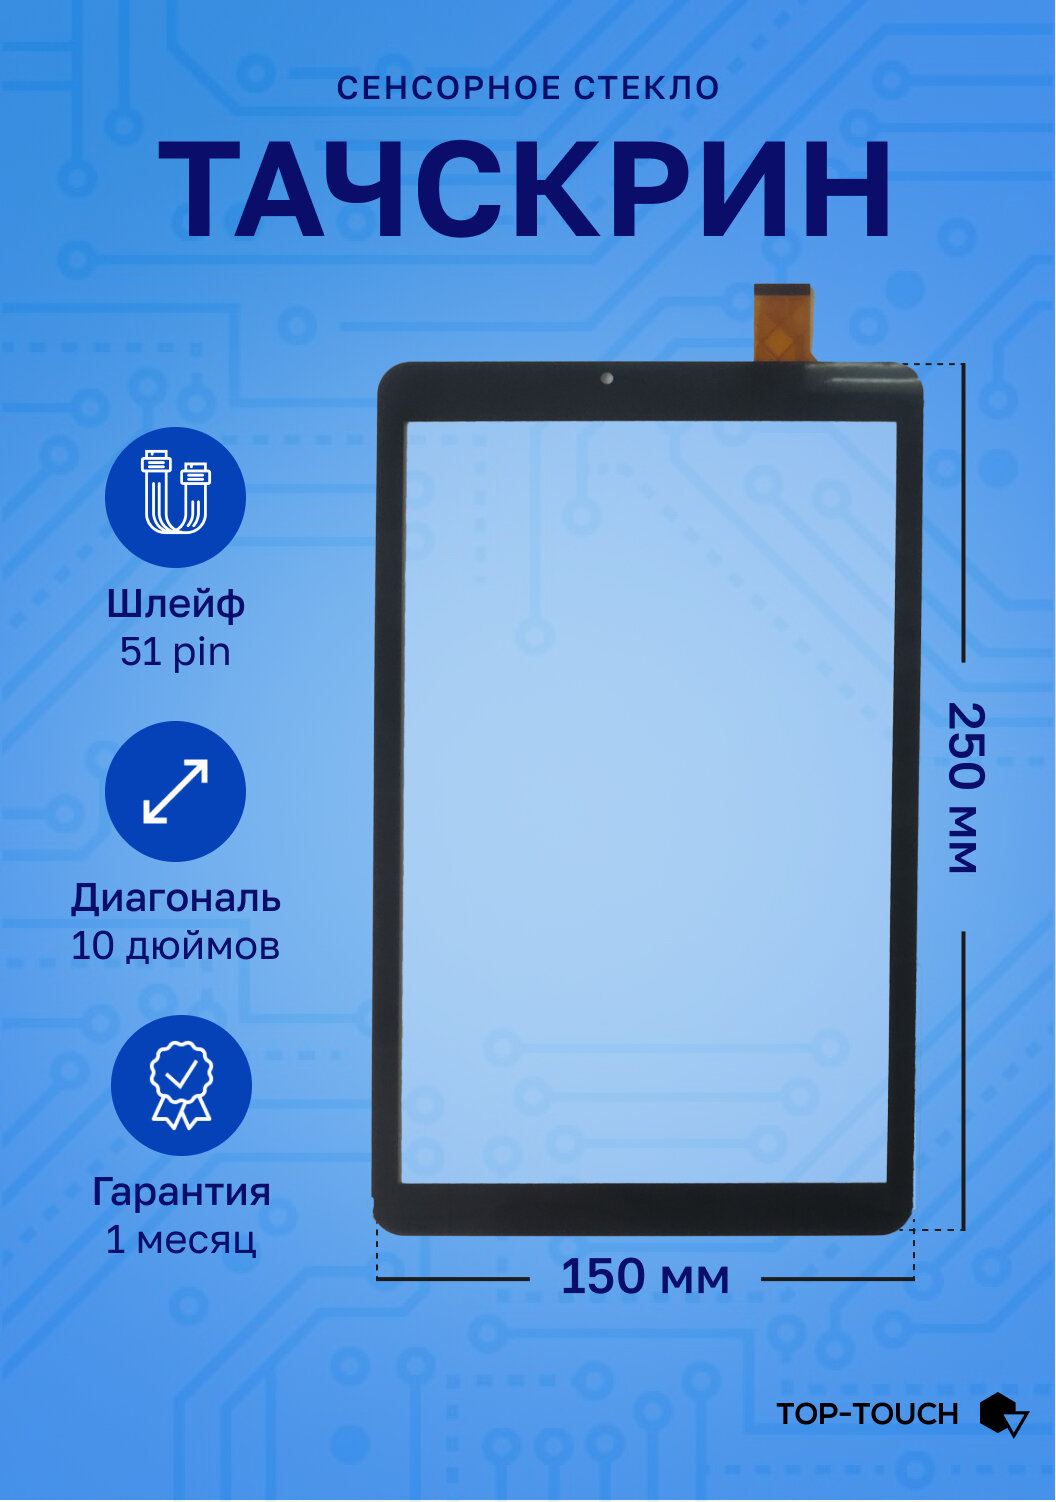 Тачскрин (сенсорное стекло) для планшета Ursus NS210 3G